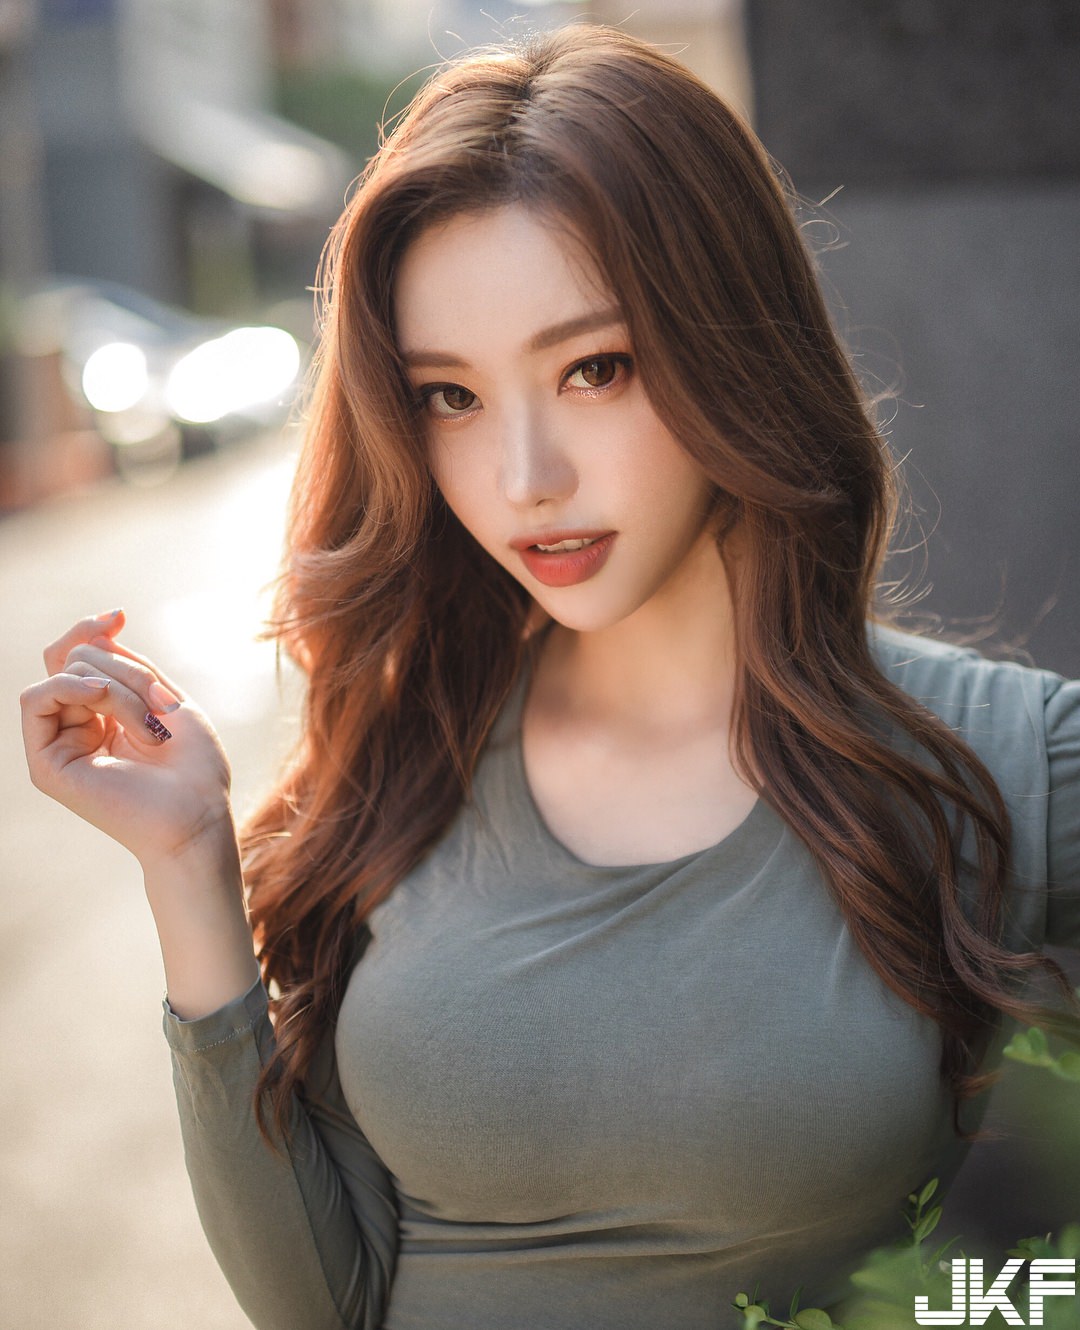 Korean photo